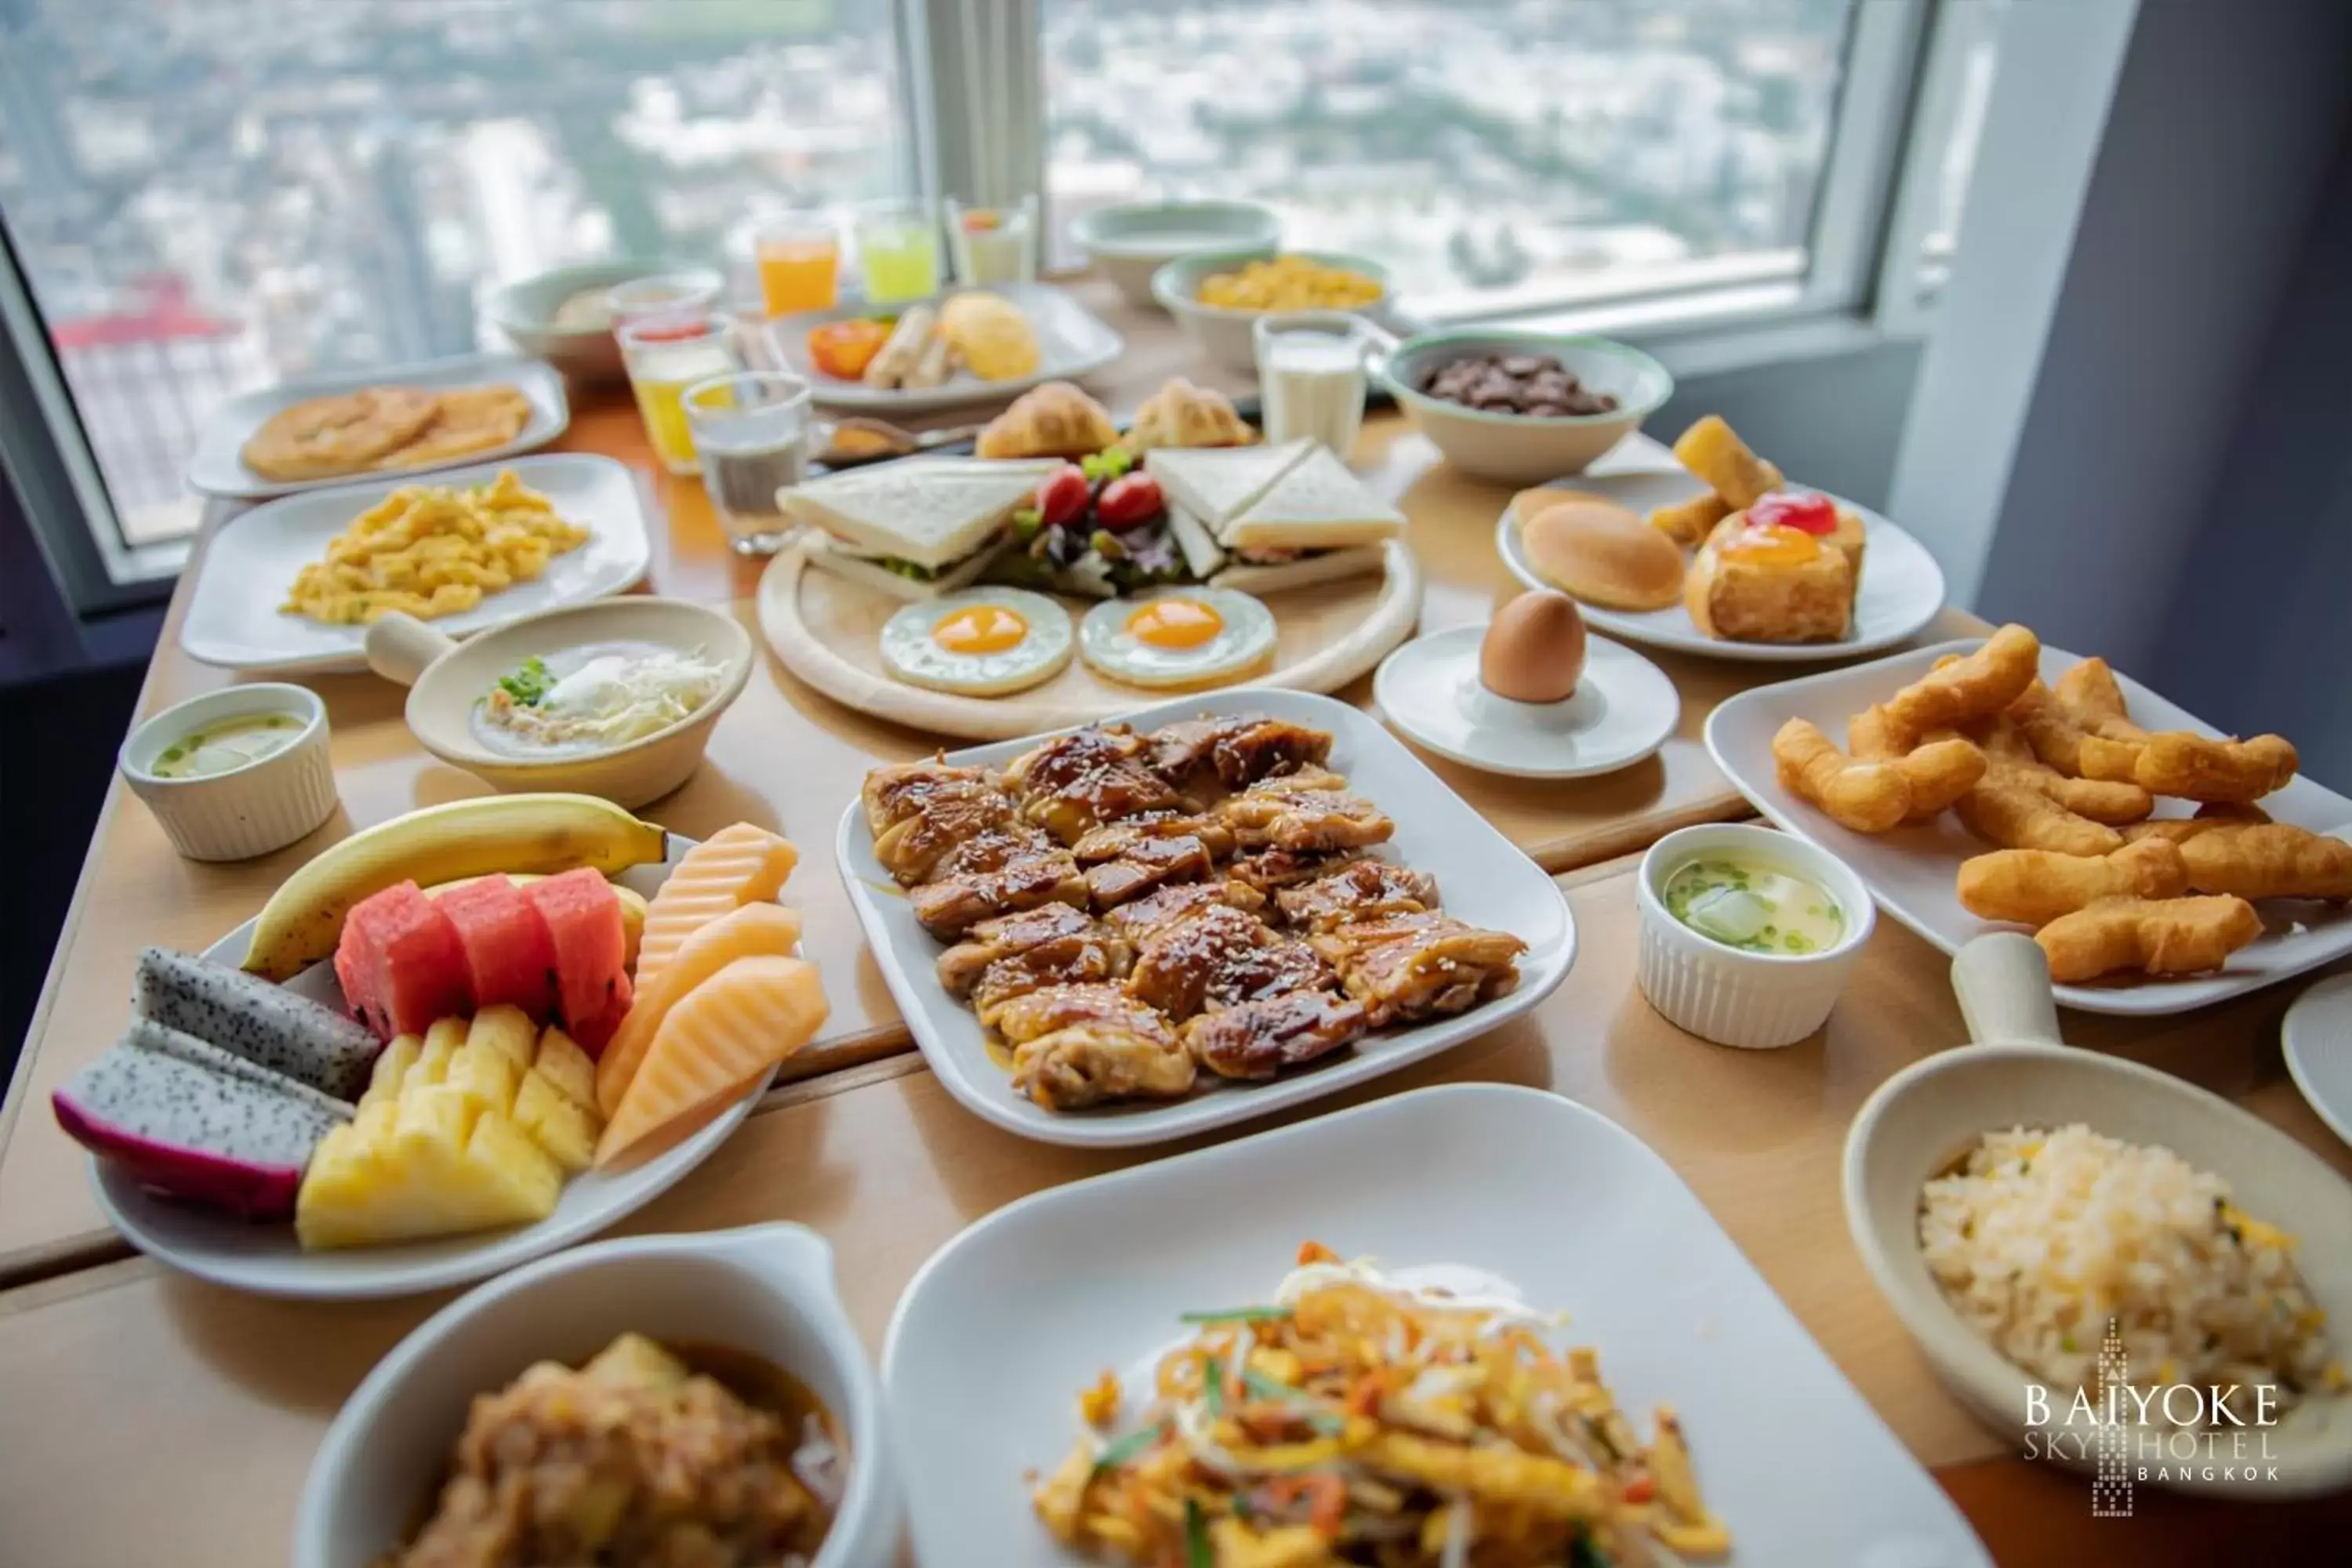 Buffet breakfast in Baiyoke Sky Hotel